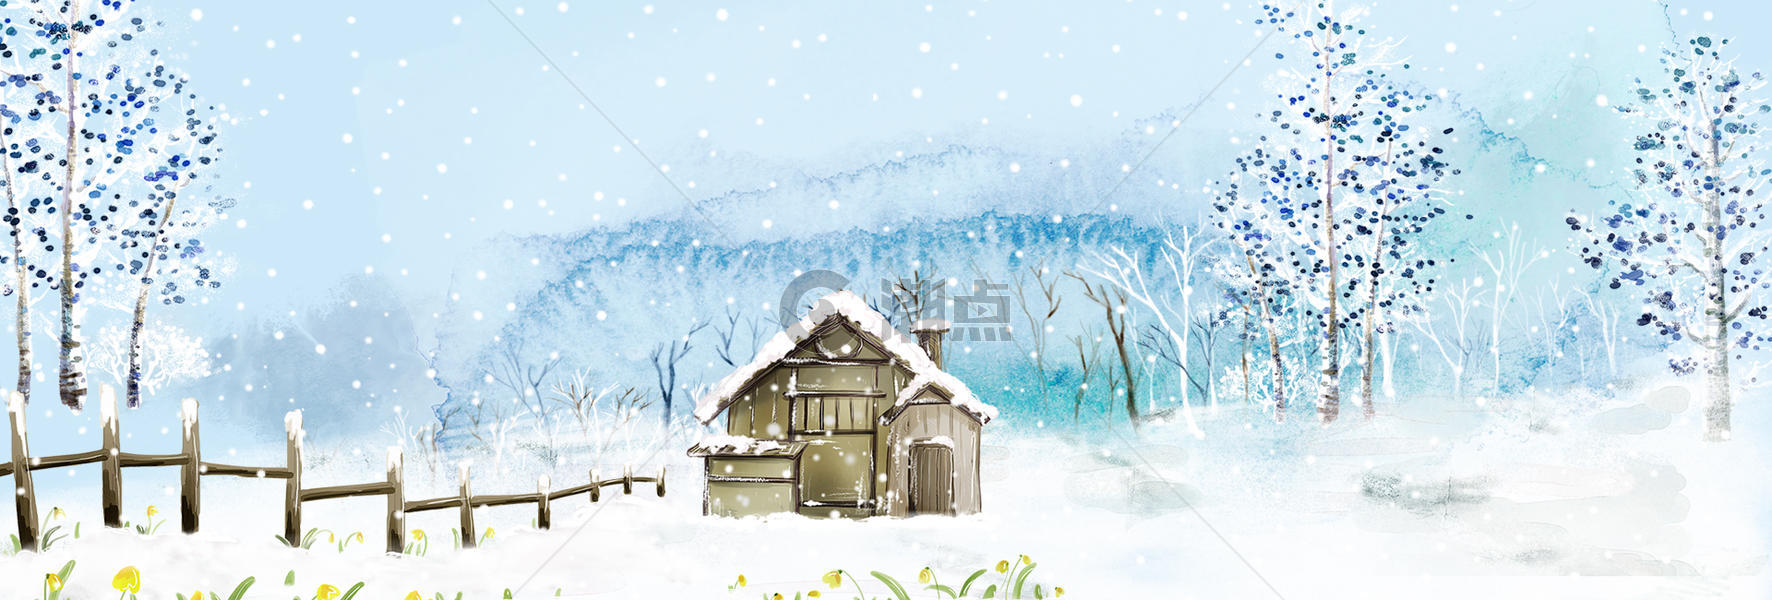 冬季雪景背景图片素材免费下载